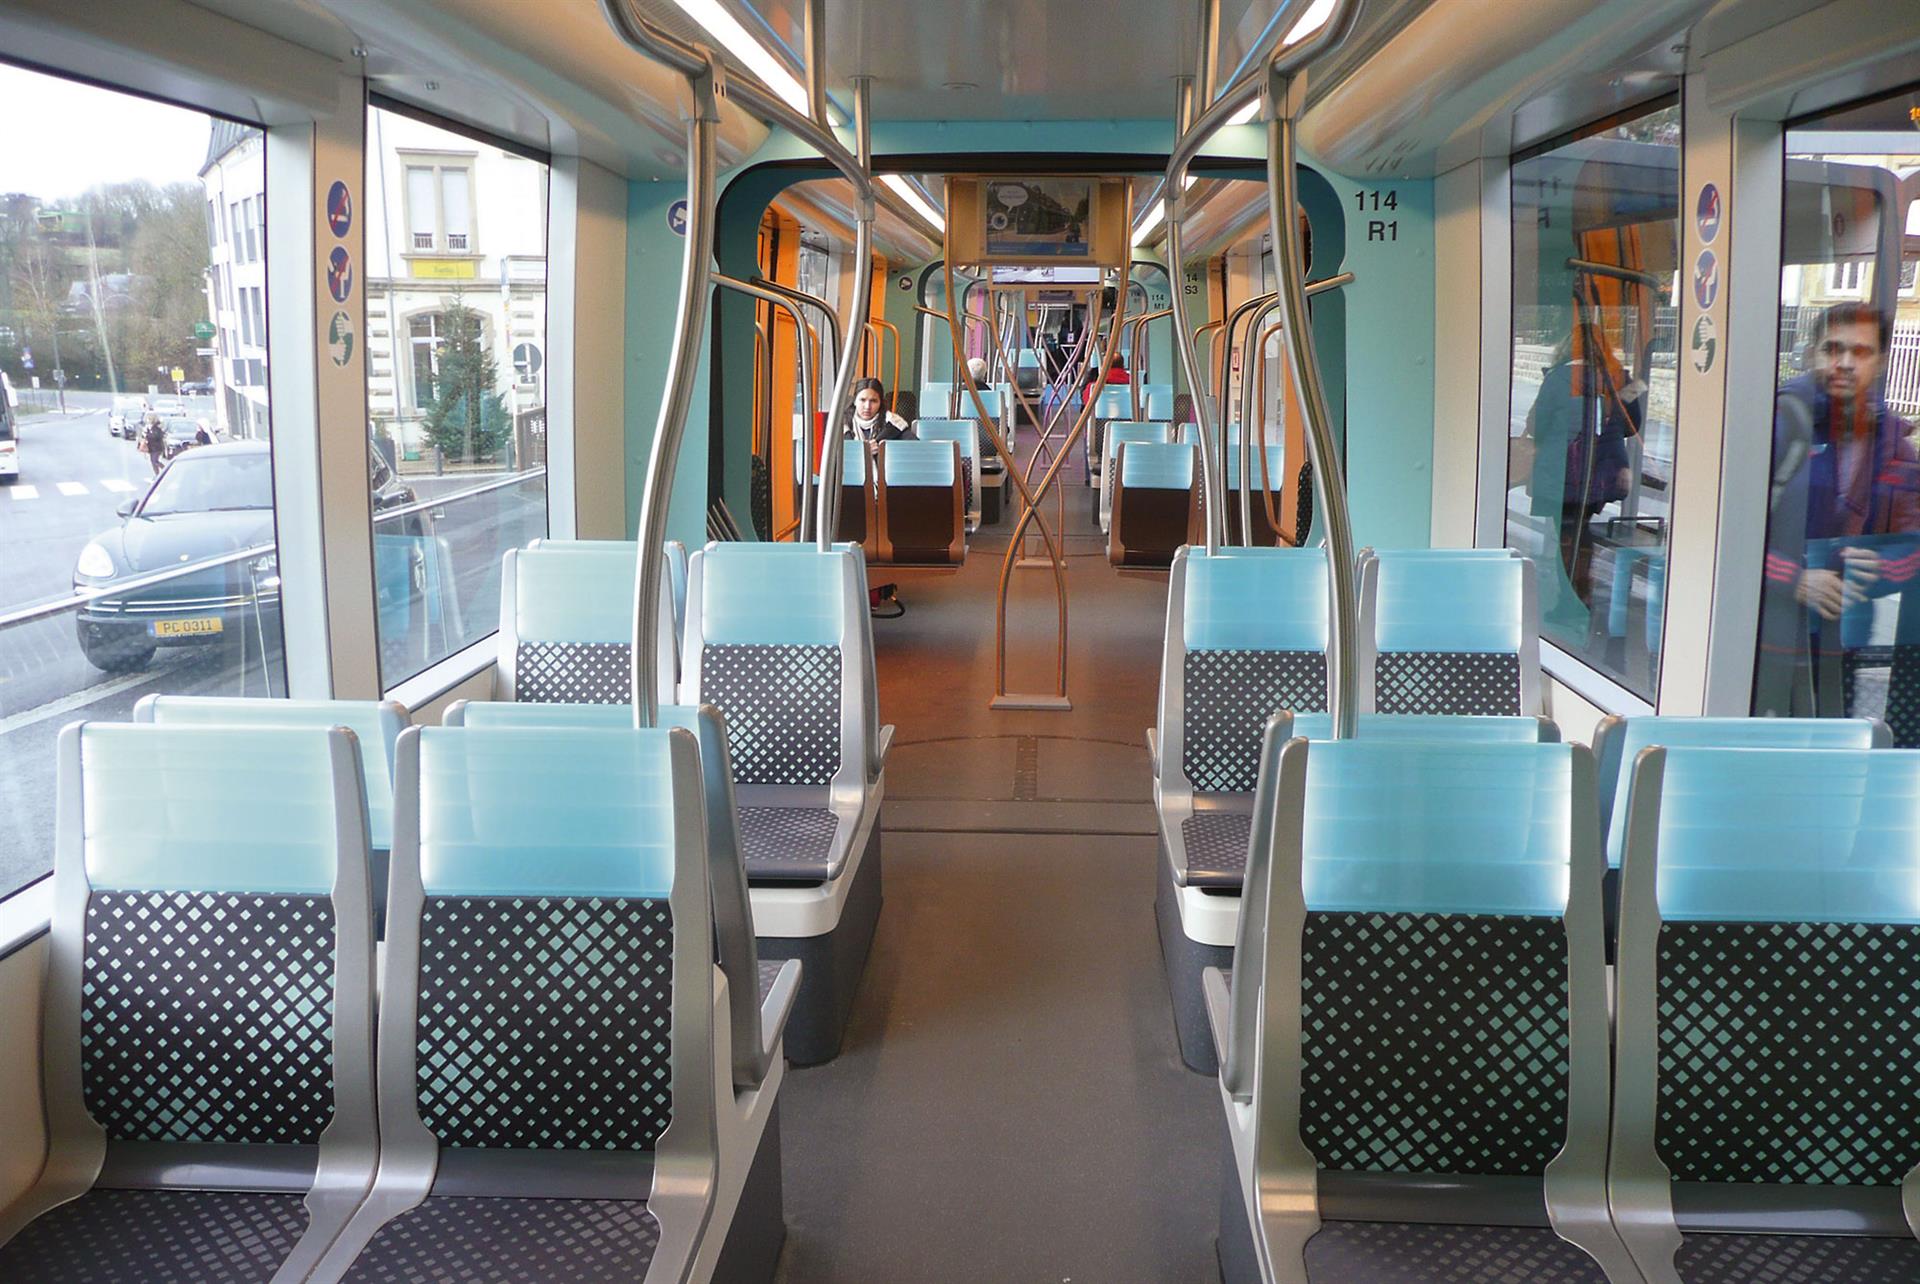 Mit hoher Qualität überzeugen – das ist die Strategie für Bus und Bahn in Luxemburg. Blick in den Fahrgastraum einer der siebenteiligen 45-Meter- Niederflur-Straßenbahnen des spanischen Herstellers CAF.